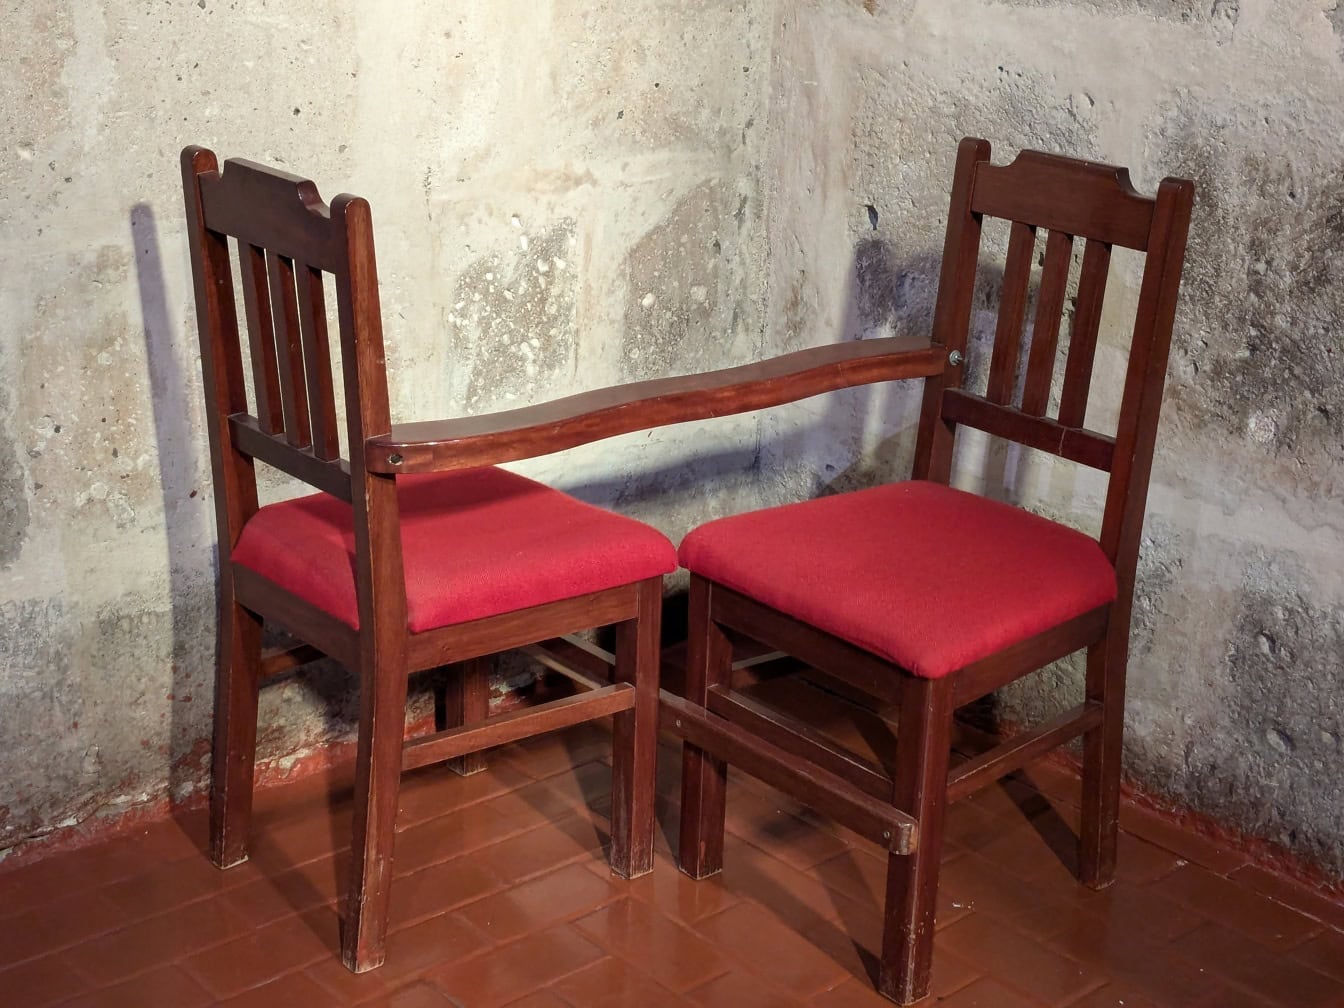 Kaksi yhdistettyä puista tuolia punaisilla tyynyillä, joita käytetään uskonnollisiin tarkoituksiin katolisen kirkon nurkassa